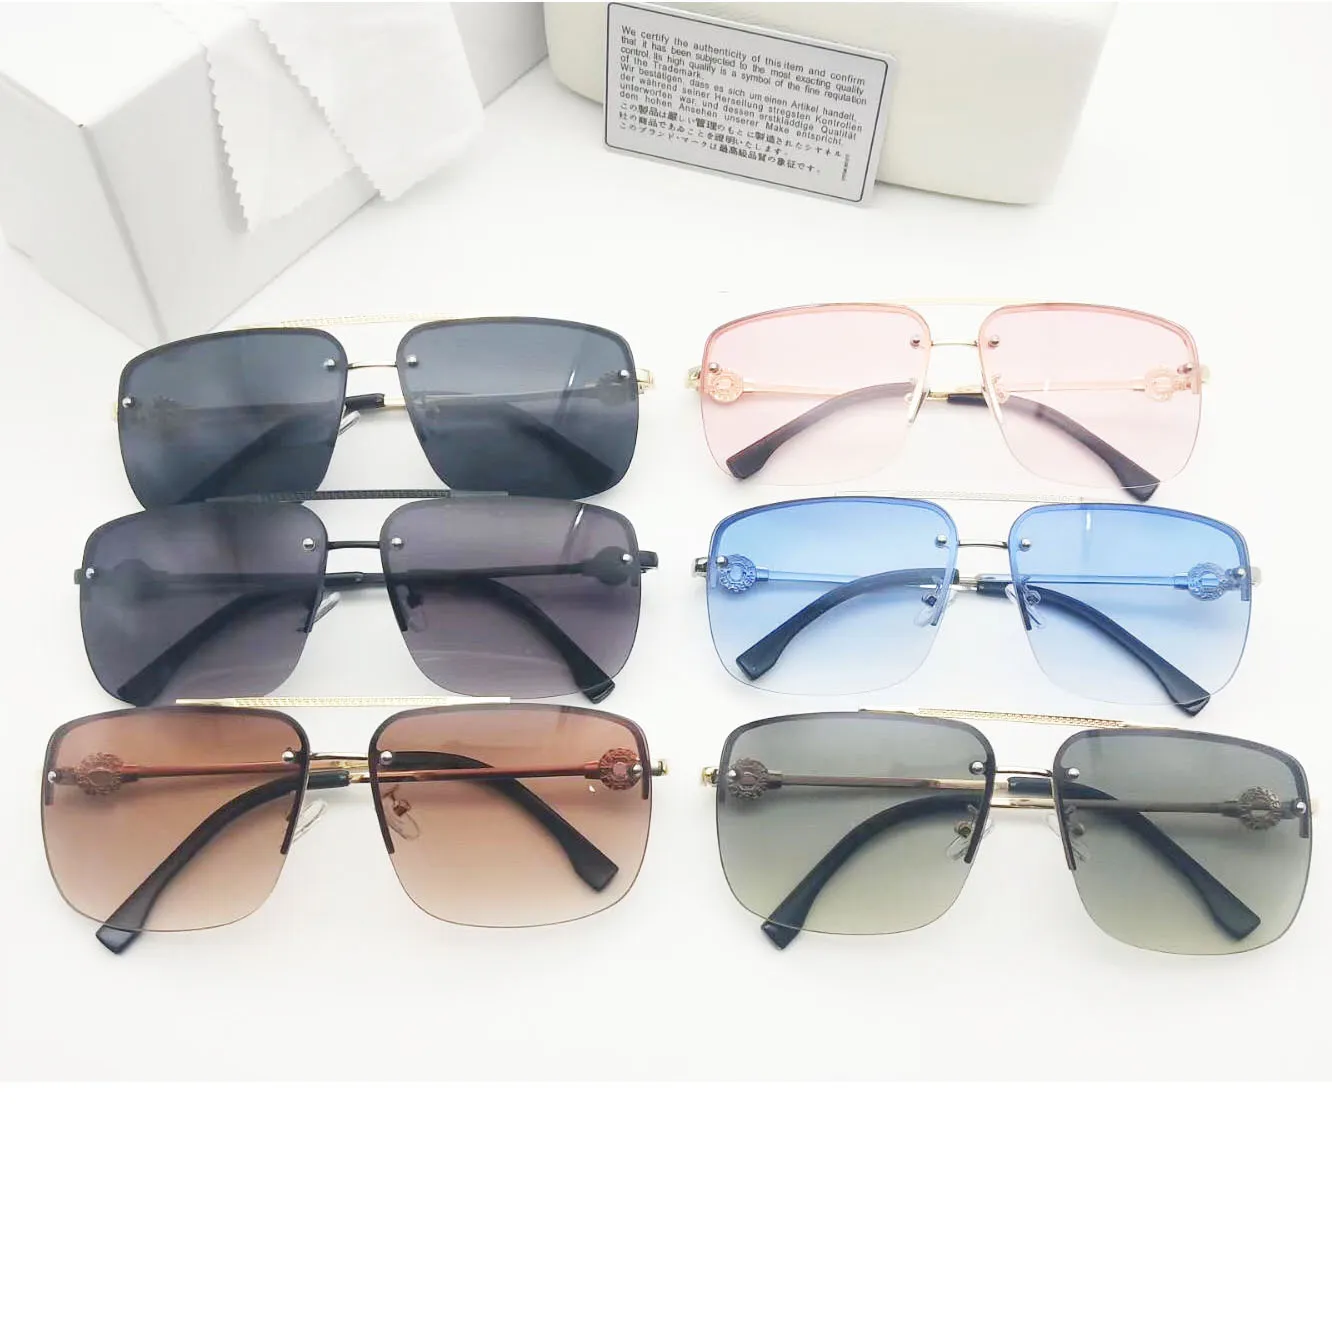 Explosions-Sonnenbrille mit Metallrahmen für Damen und Herren, NICE FACE-Brille, Sonnenblende, Marken-Reitbrille, hohe Qualität, 3 Farben